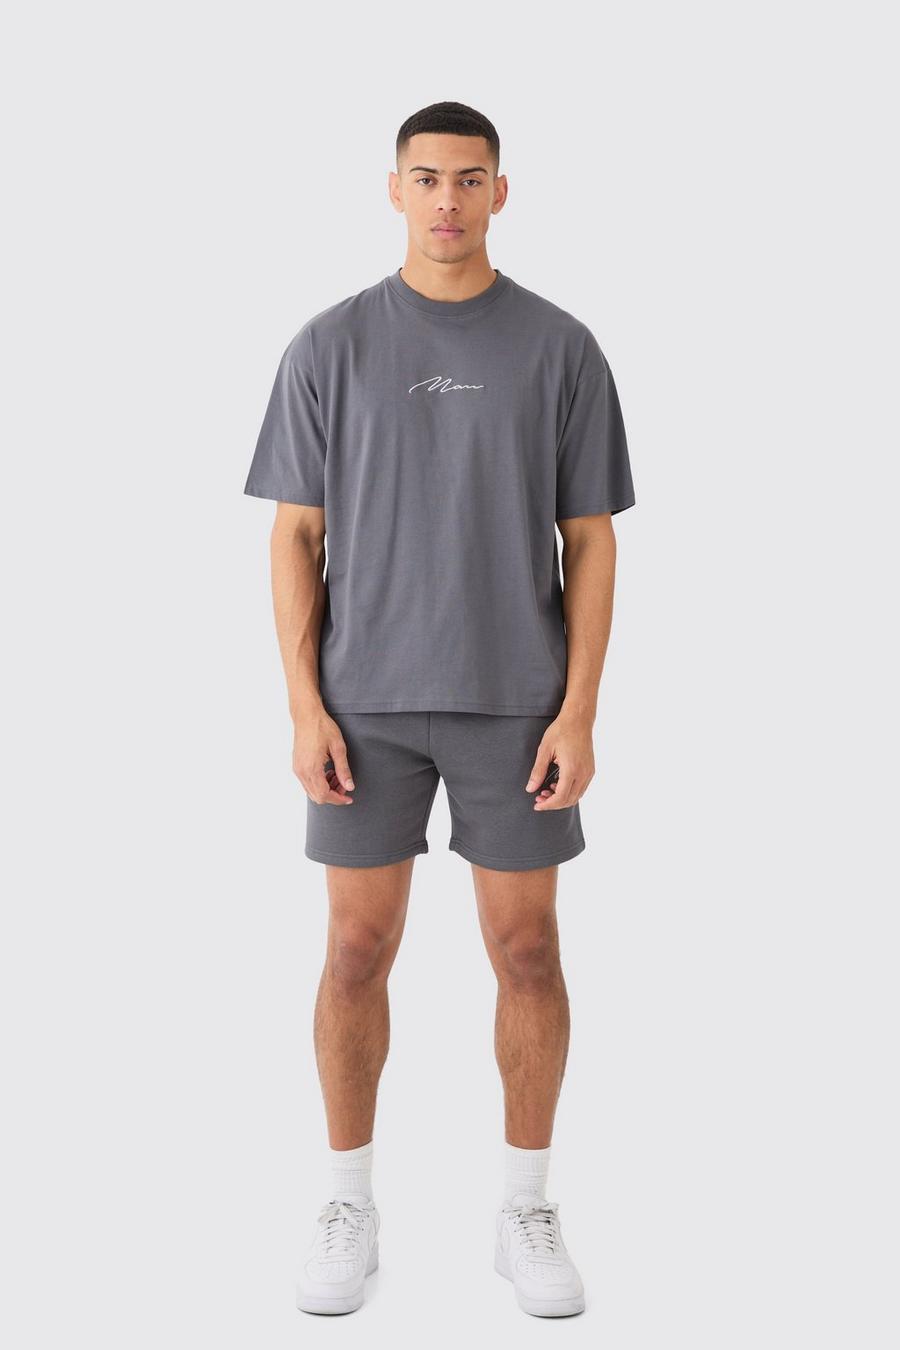 Charcoal Man Signature T-Shirt En Baggy Shorts Set